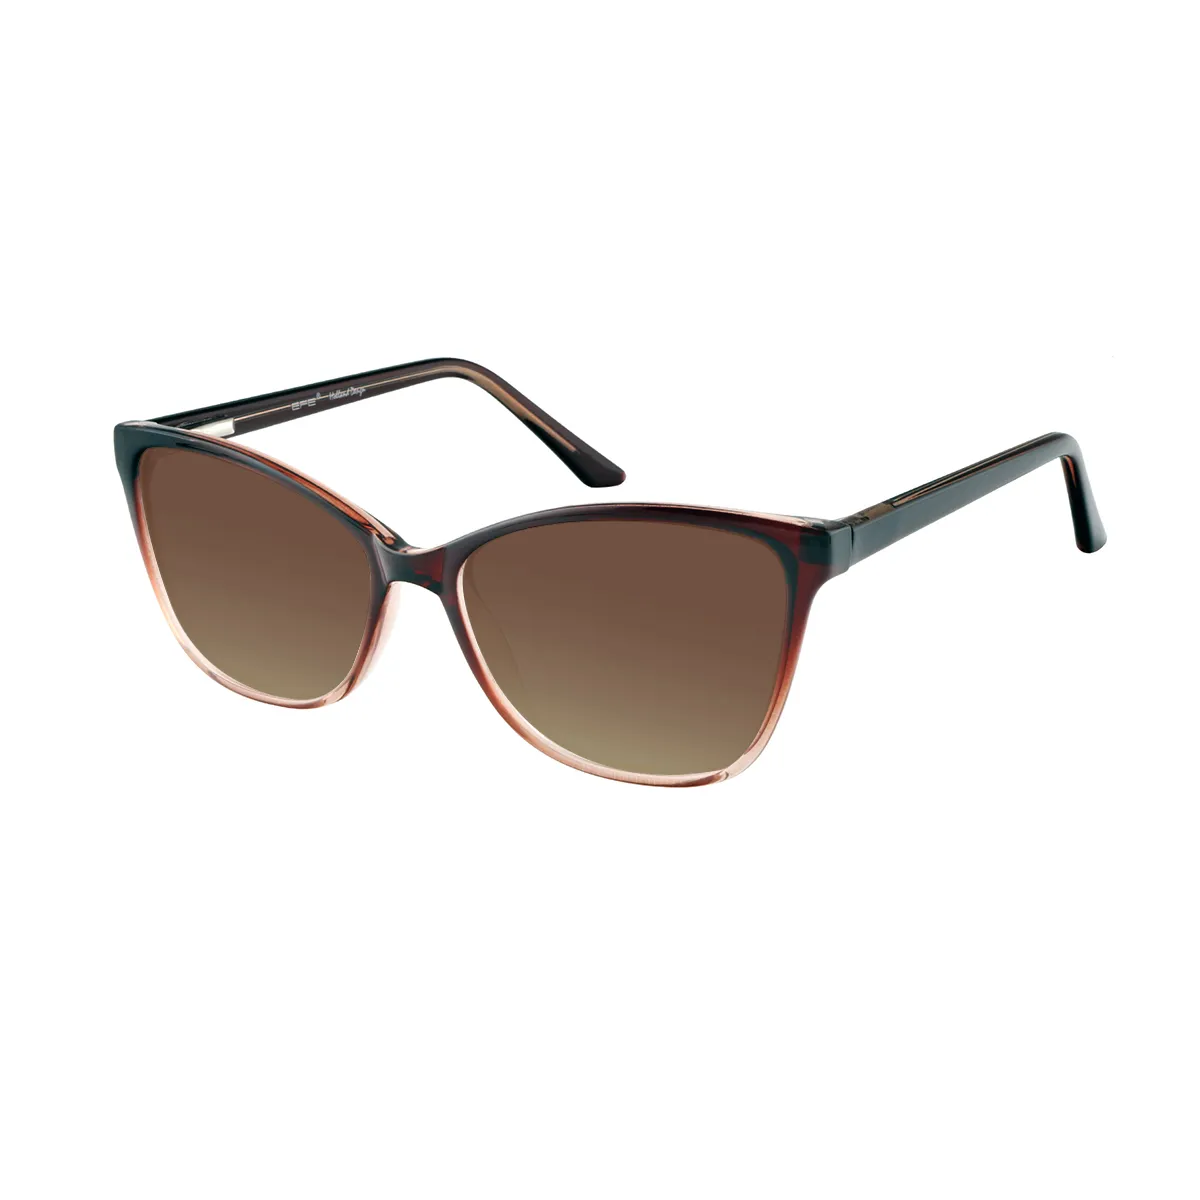 Babette - Cat-eye Brown Sunglasses for Women